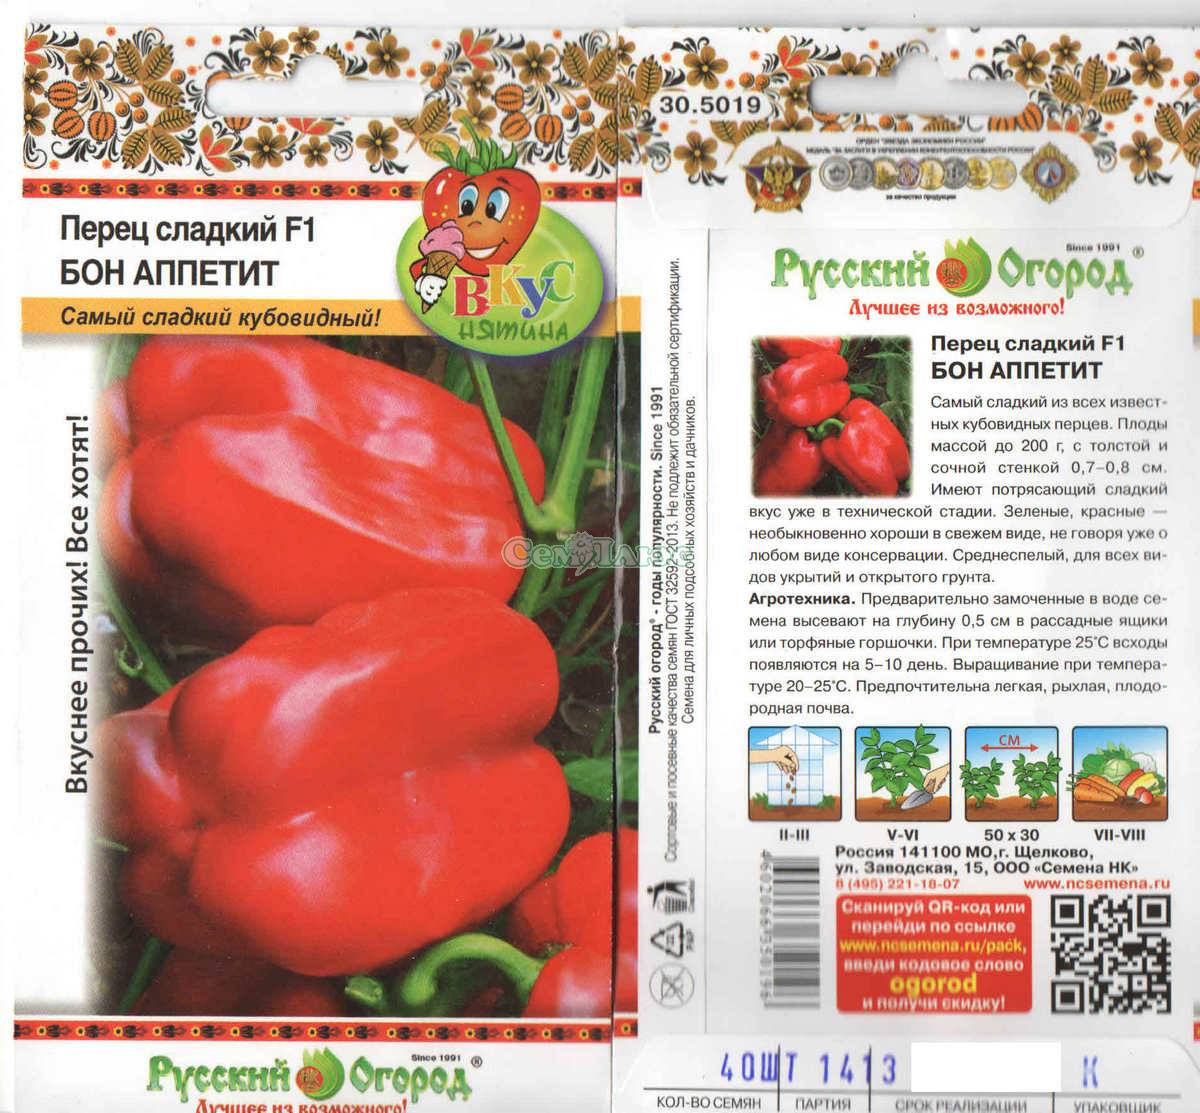 Томат бетта: характеристика сорта, фото плодов, описание особенностей выращивания, а также отзывы фермеров об этих помидорах